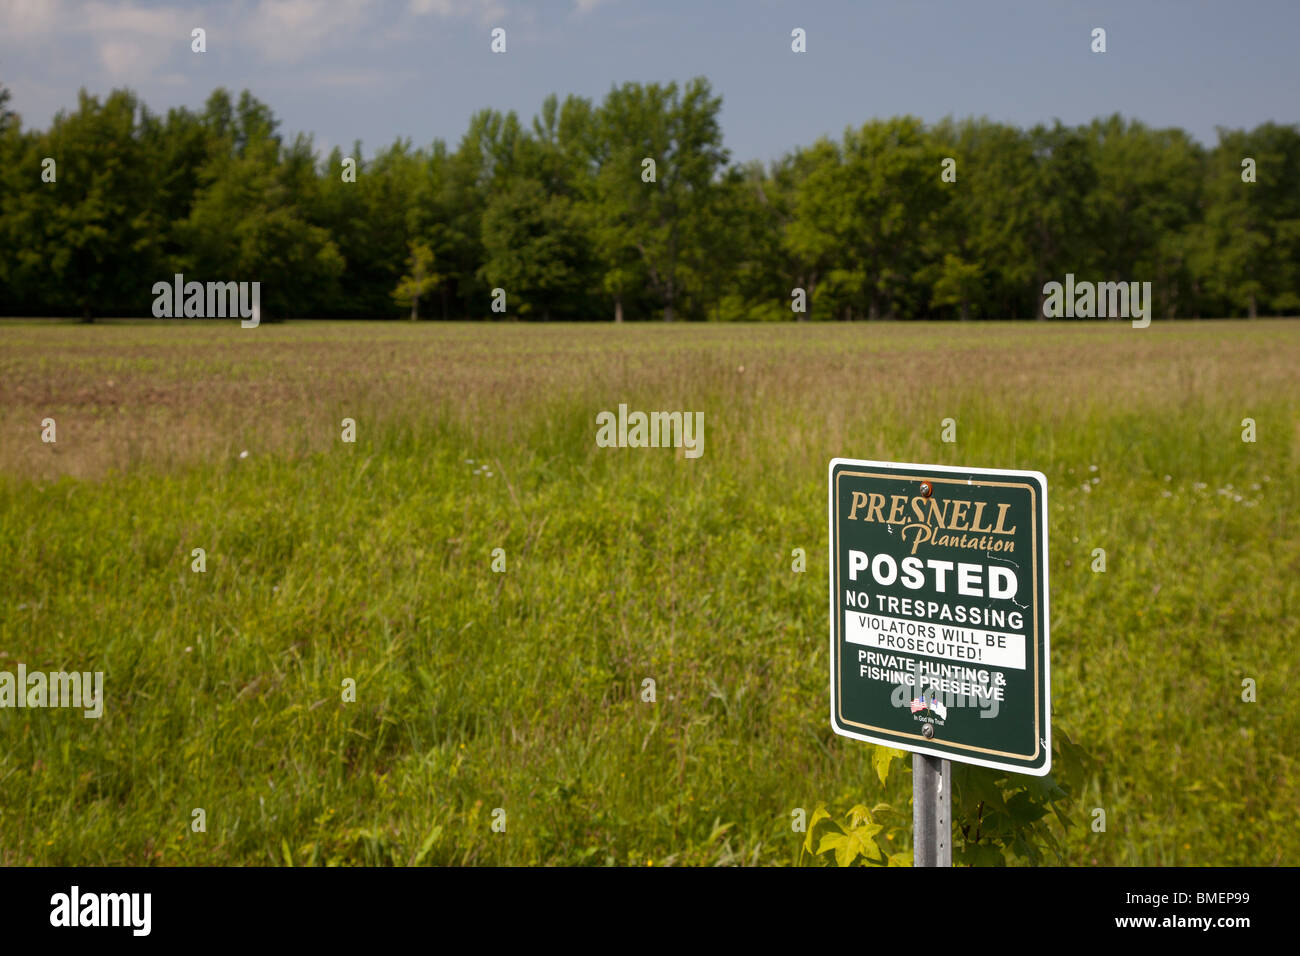 Mairie, de l'Indiana - un signe interdit l'entrée à Presnell Plantation, une salle de chasse et pêche préserver. Banque D'Images